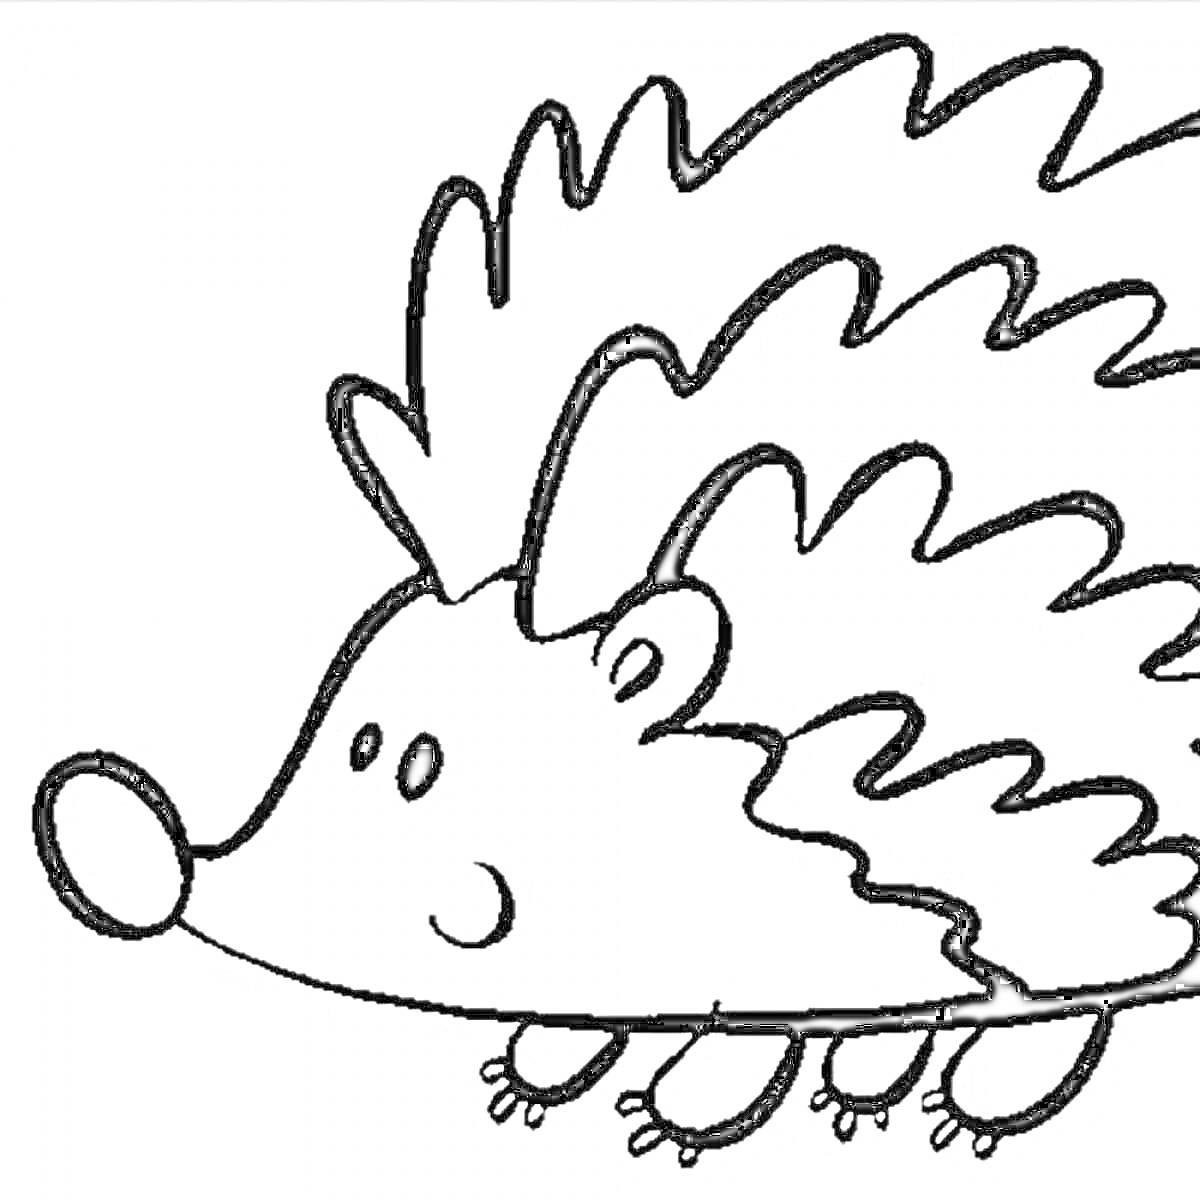 Раскраска Ежик с большими глазами и носом, стоящий на четырех лапках, с острыми иголками на спине